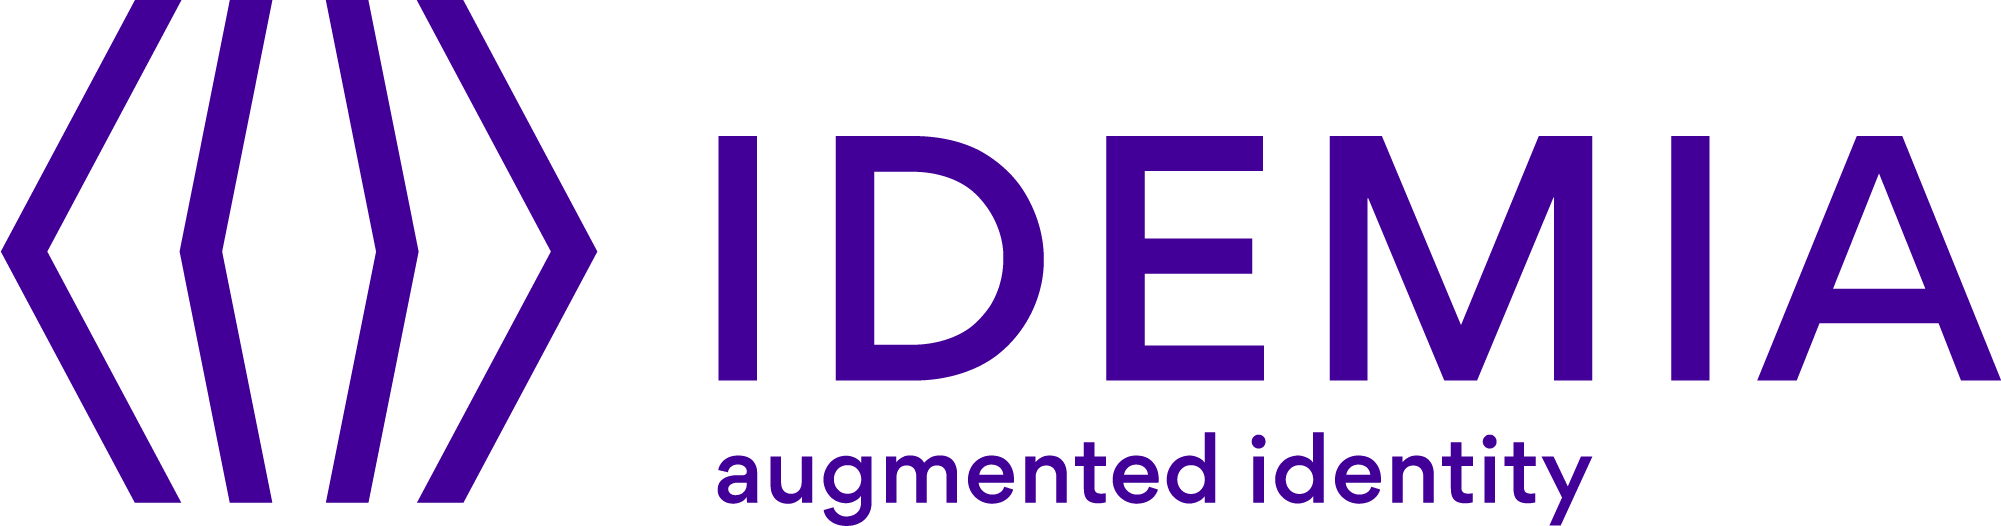 IDEMIA Logo